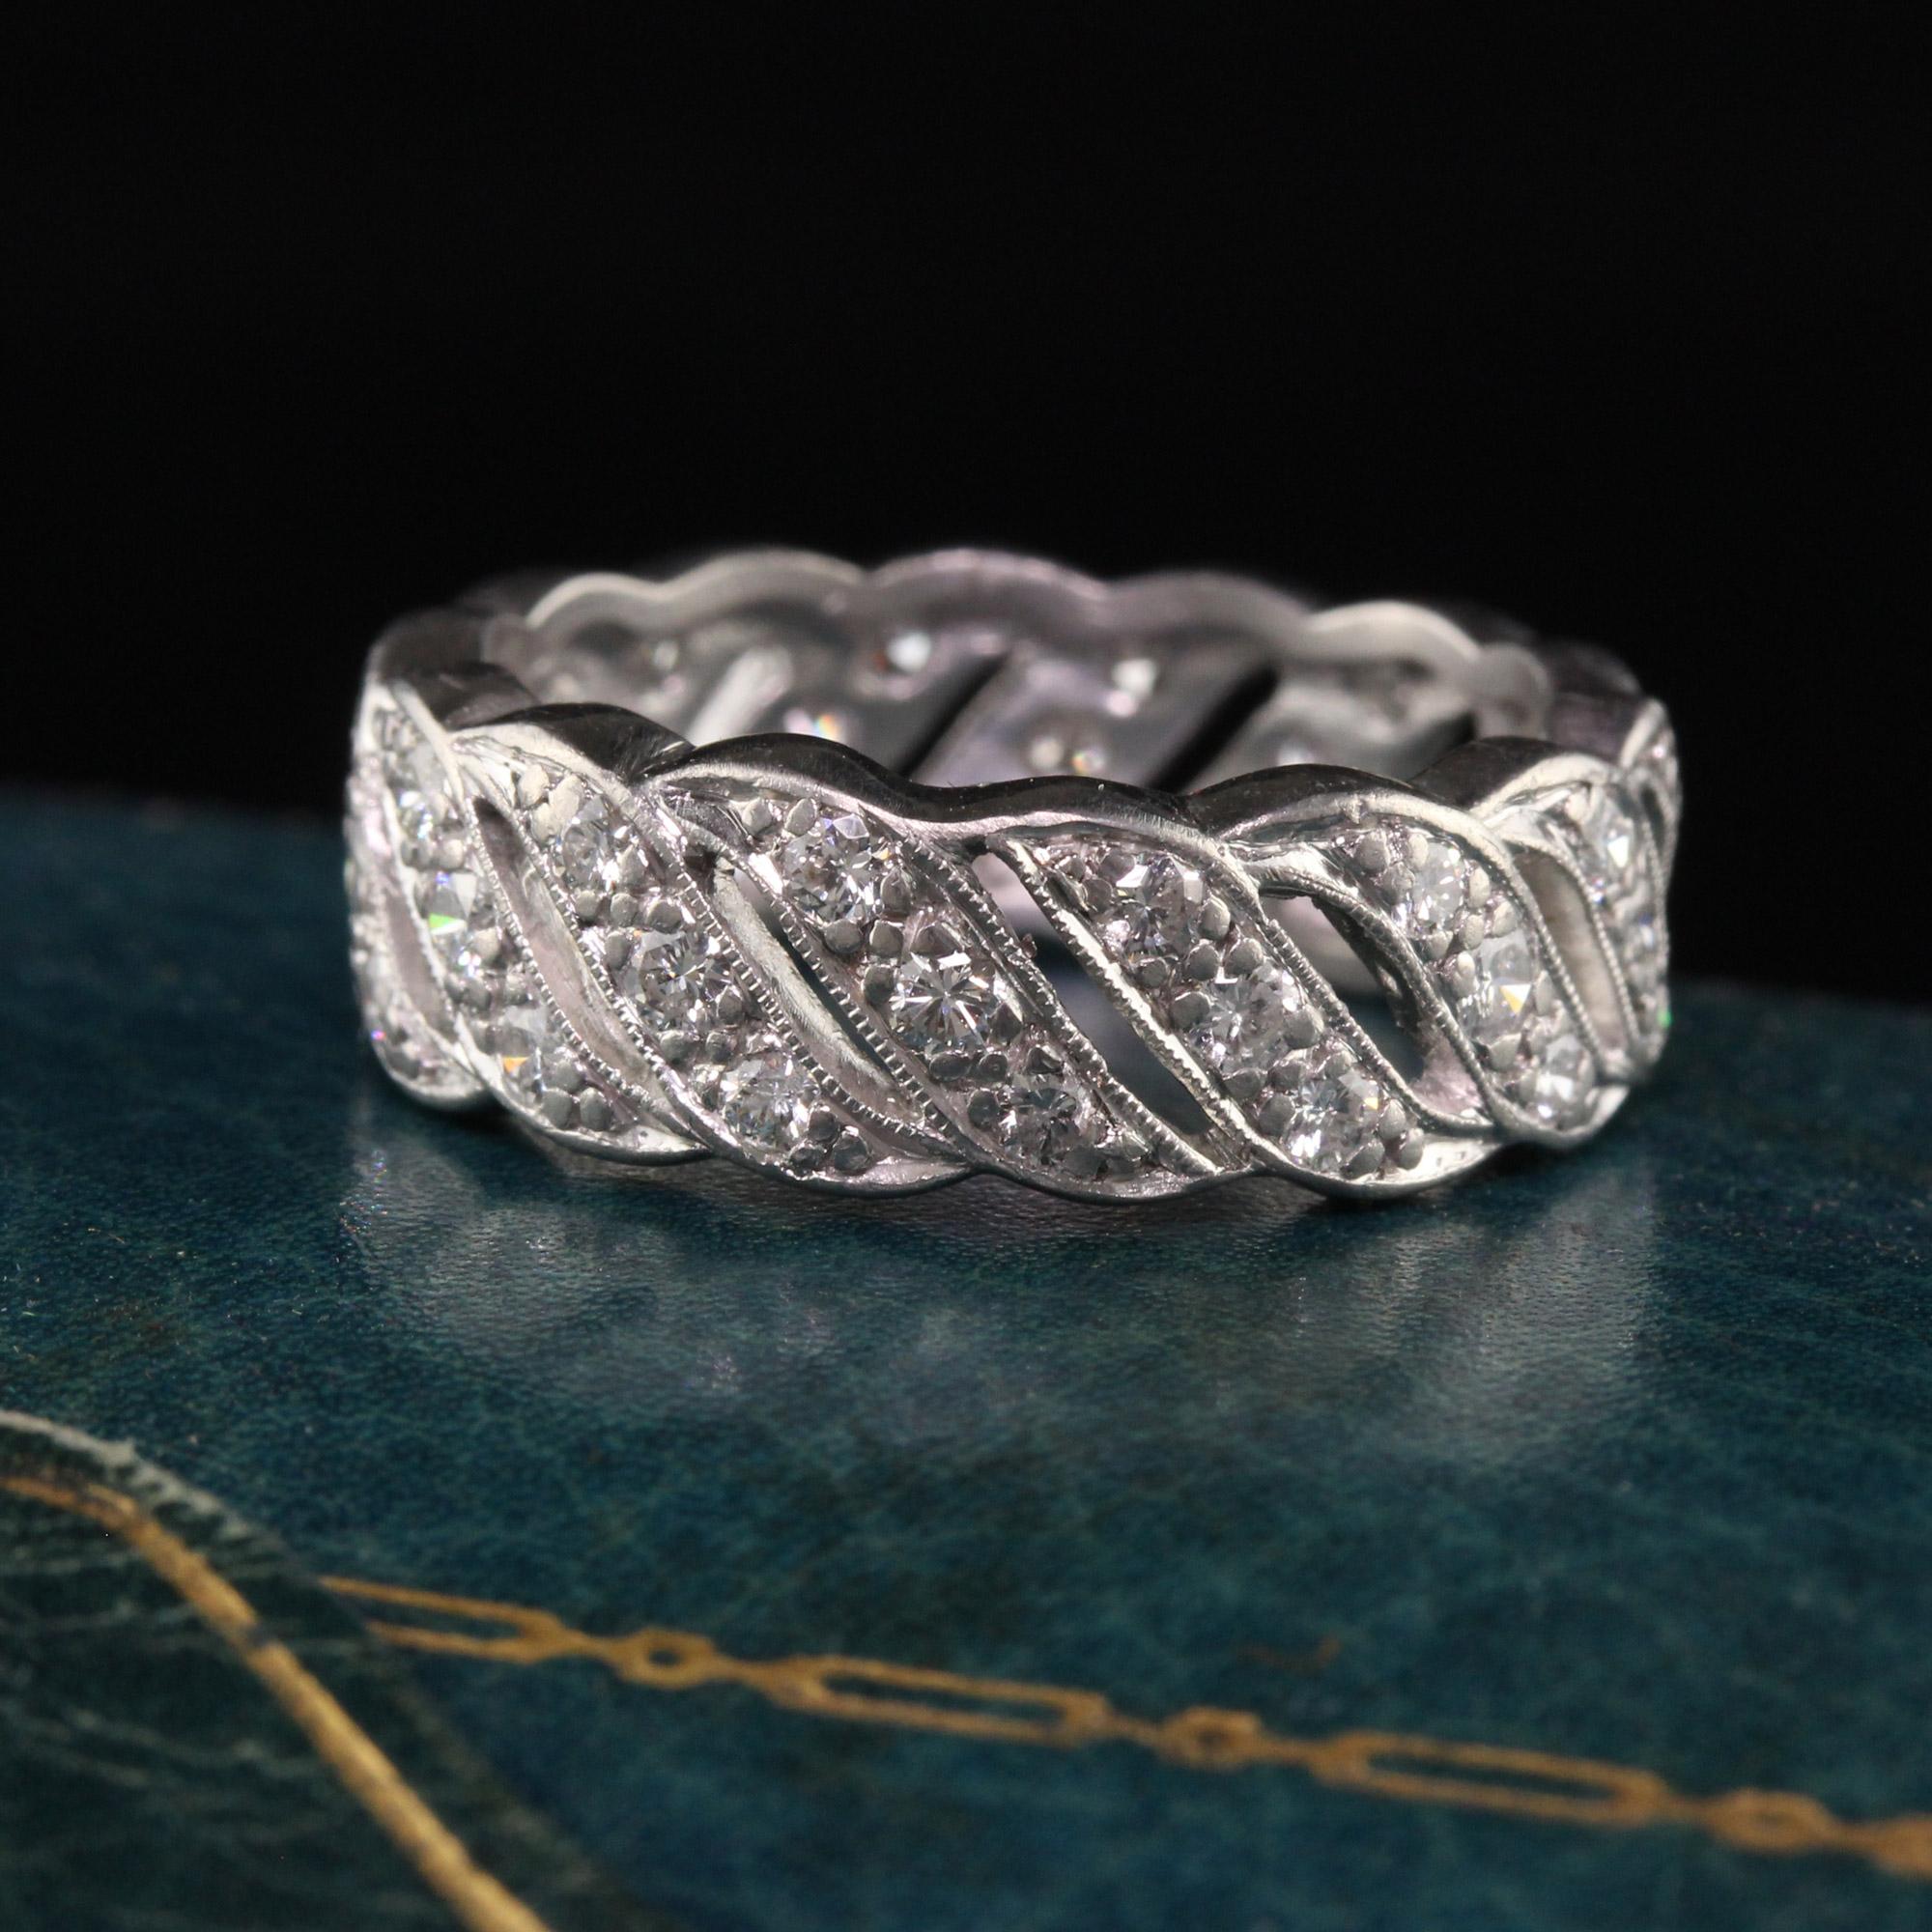 Magnifique alliance en platine Art Déco antique avec large diamant - Taille 6. Cette incroyable alliance est fabriquée en platine. Des diamants sont sertis en forme de vague tout autour de l'anneau.

Article #R1313

Métal : Platine

Poids : 7